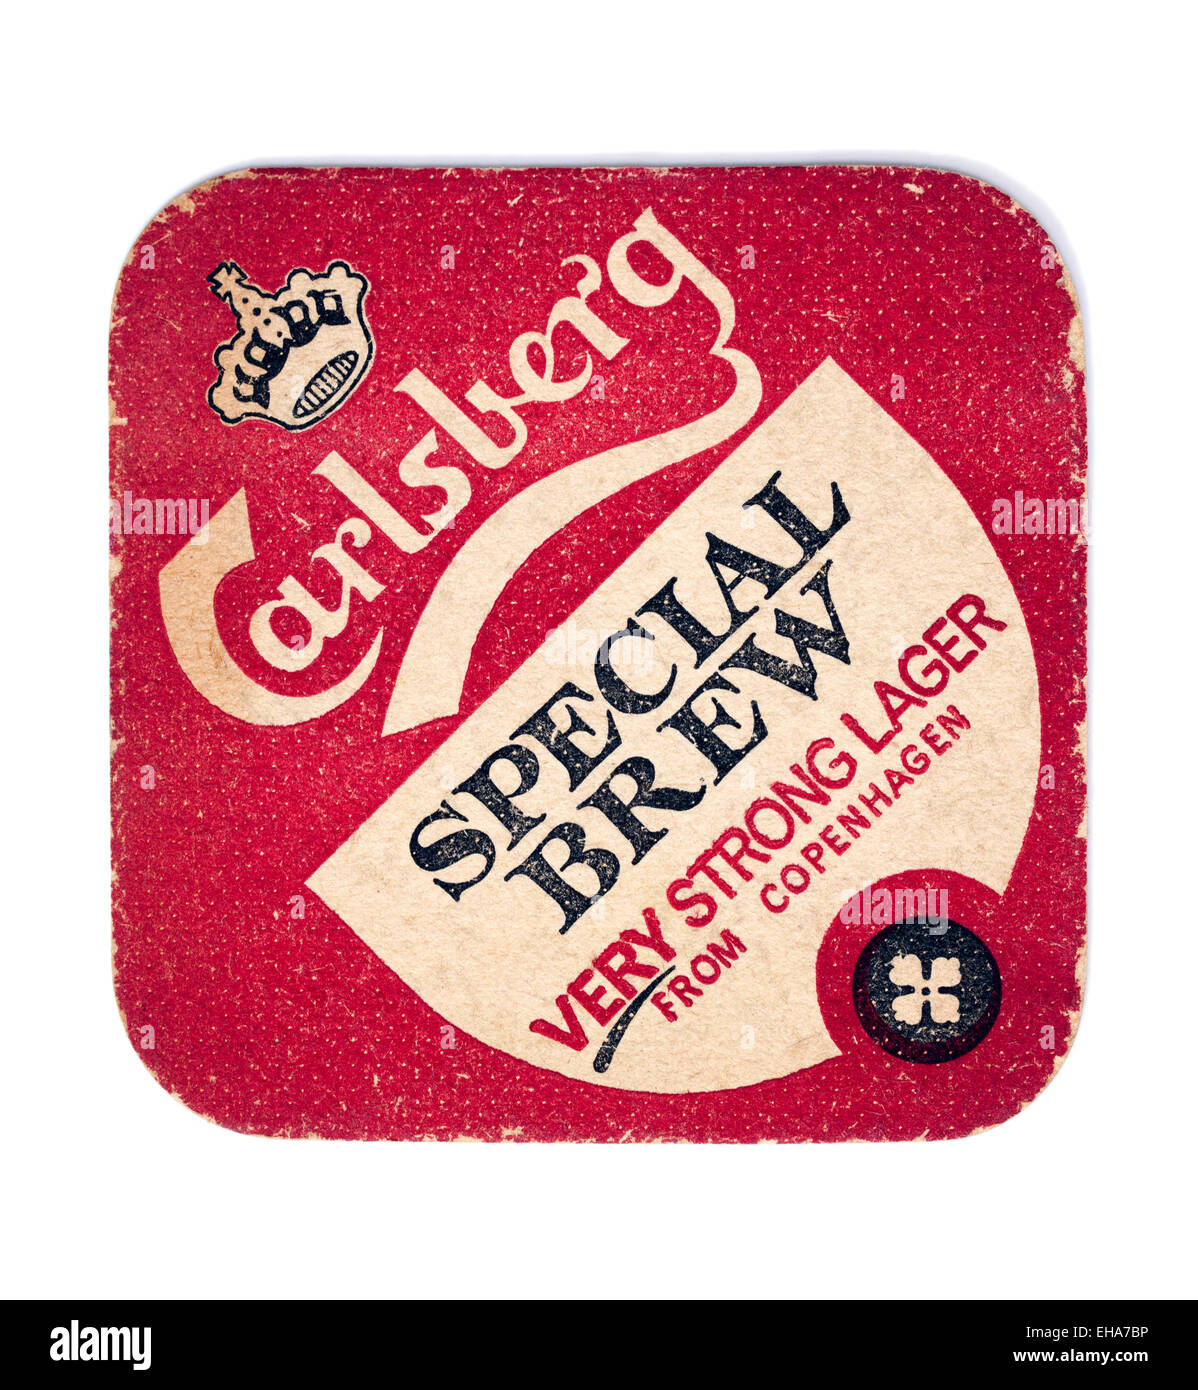 Vintage Beermat Advertising Carlsberg Special Brew Beer Stock Photo